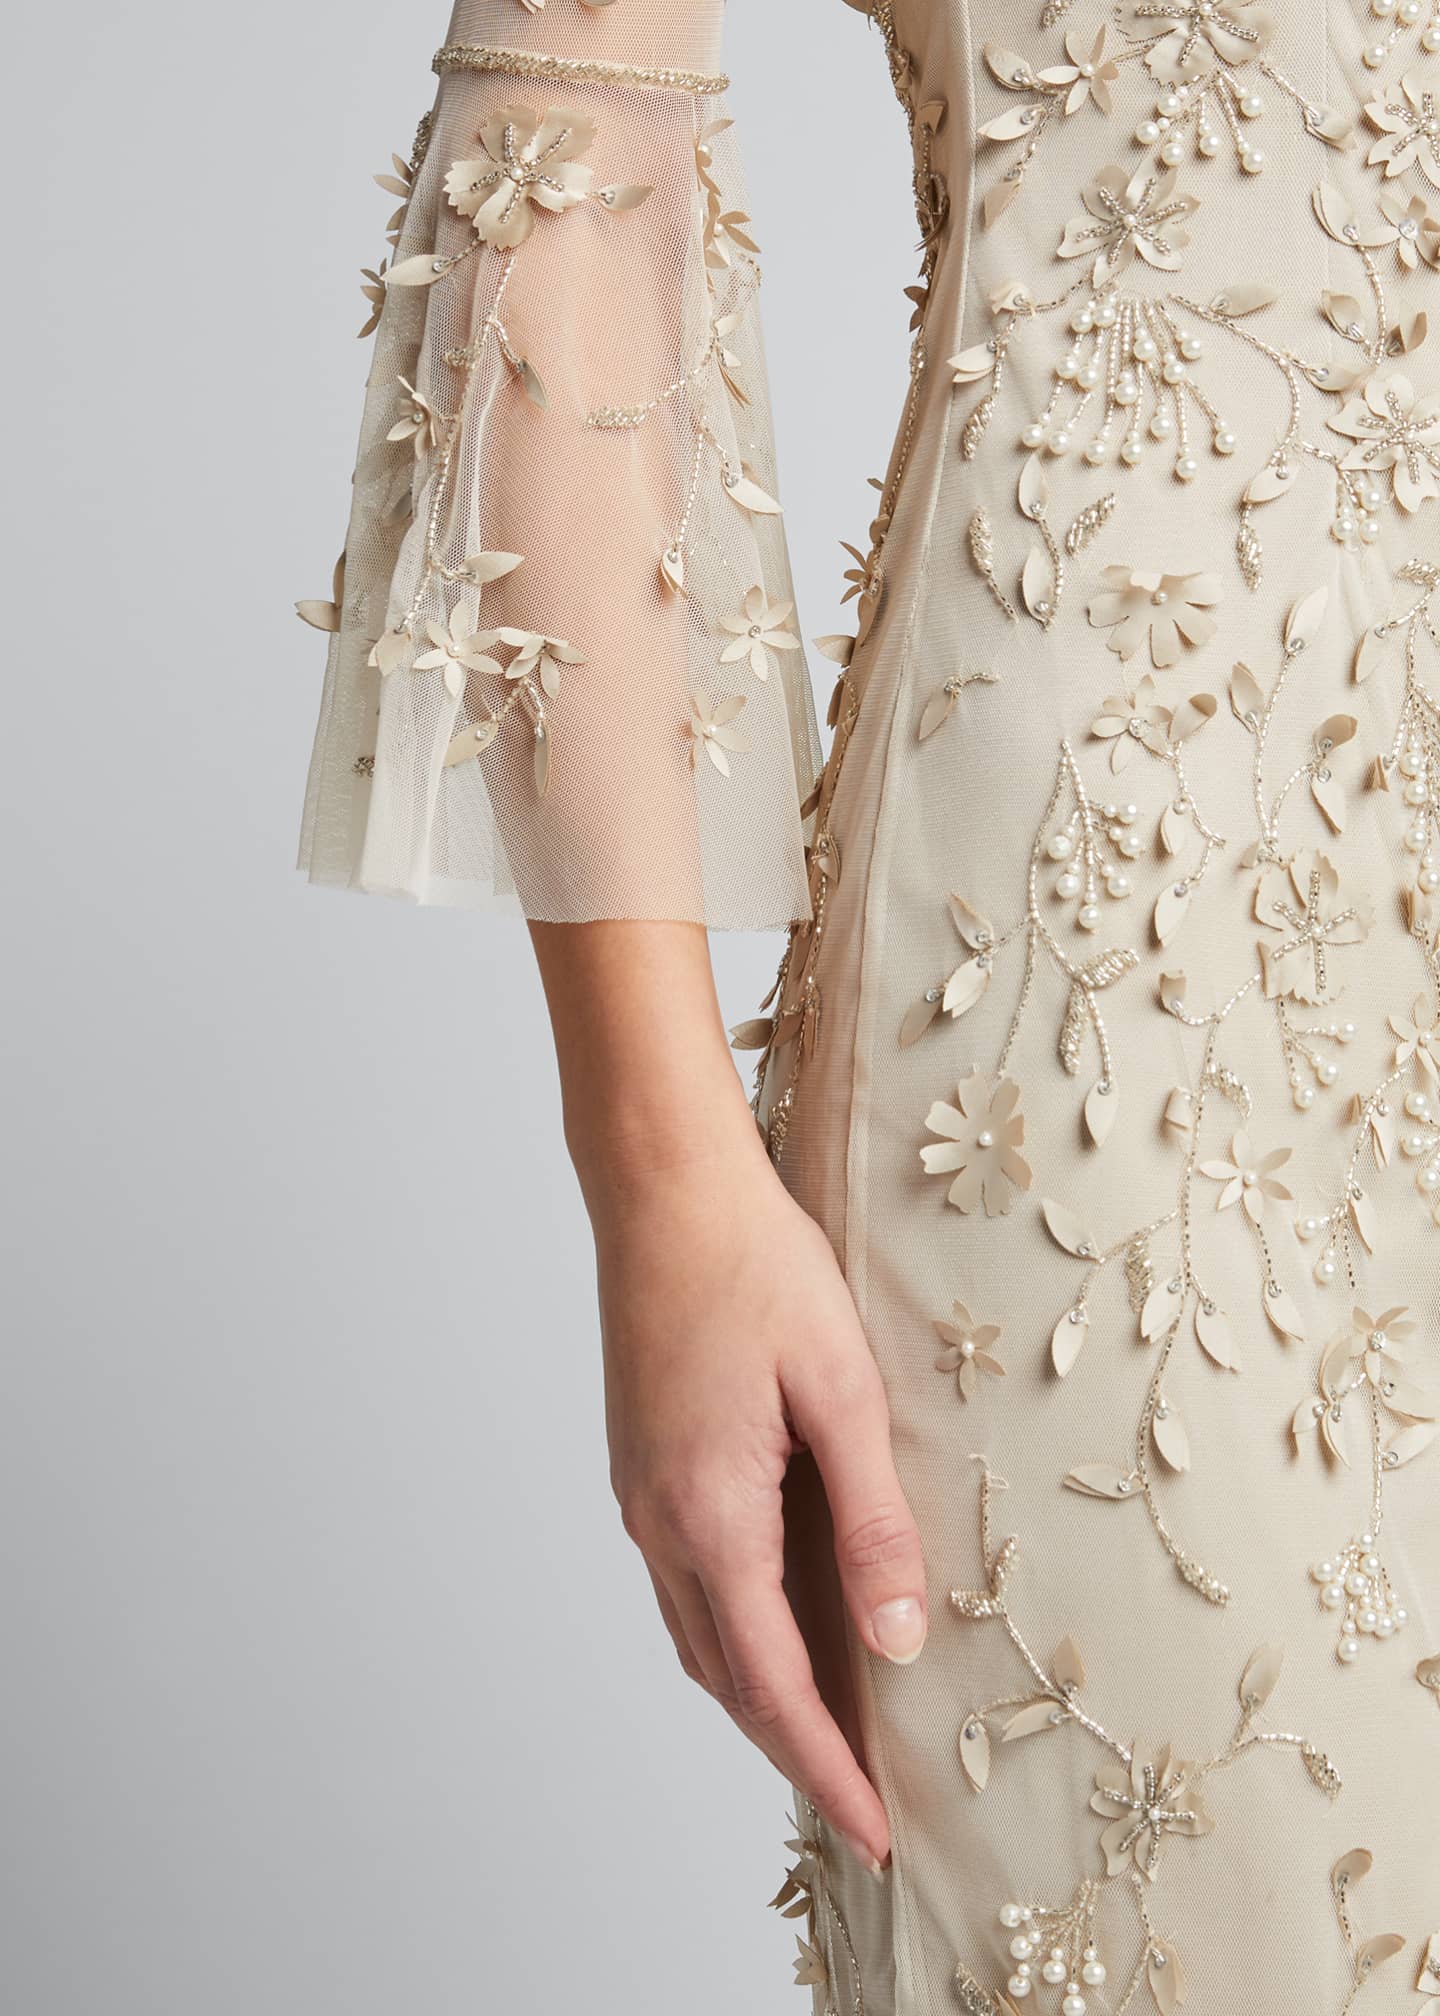 Theia Hand-Beaded & Petal Applique 3/4 Bell-Sleeve Dress - Bergdorf Goodman